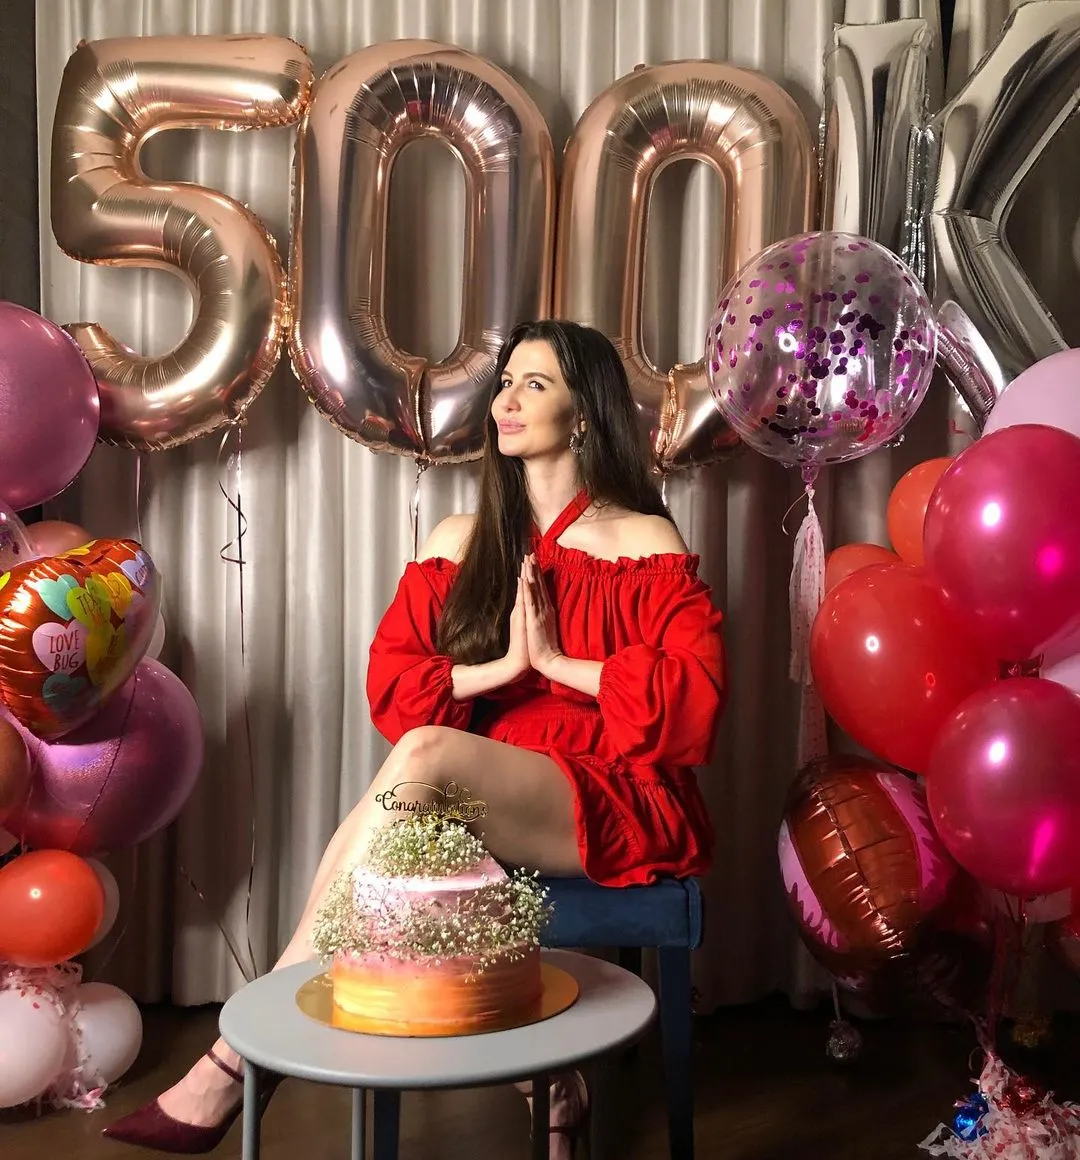 अभिनेत्री जॉर्जिया एंड्रियानी अपने इंस्टाग्राम पर आधे मिलियन फोल्लोवेर्स तक पहुंची। कहती हैं, 